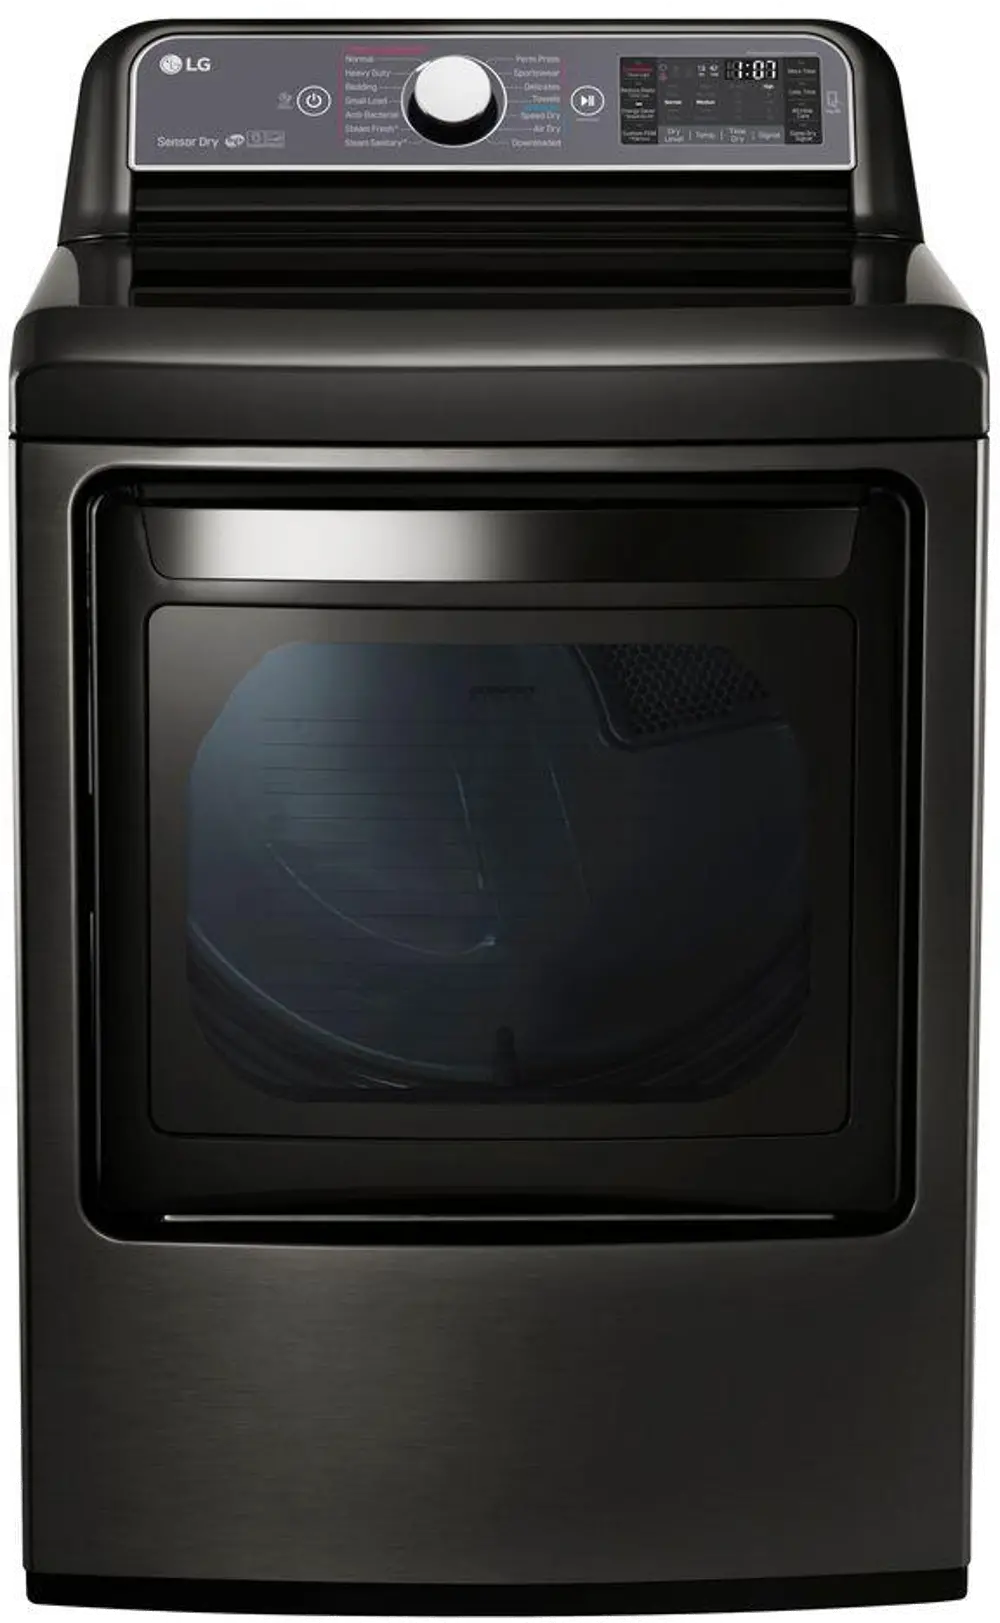 DLGX7601KE LG Gas Dryer with EasyLoad - 7.3 cu. ft. Black Stainless Steel-1